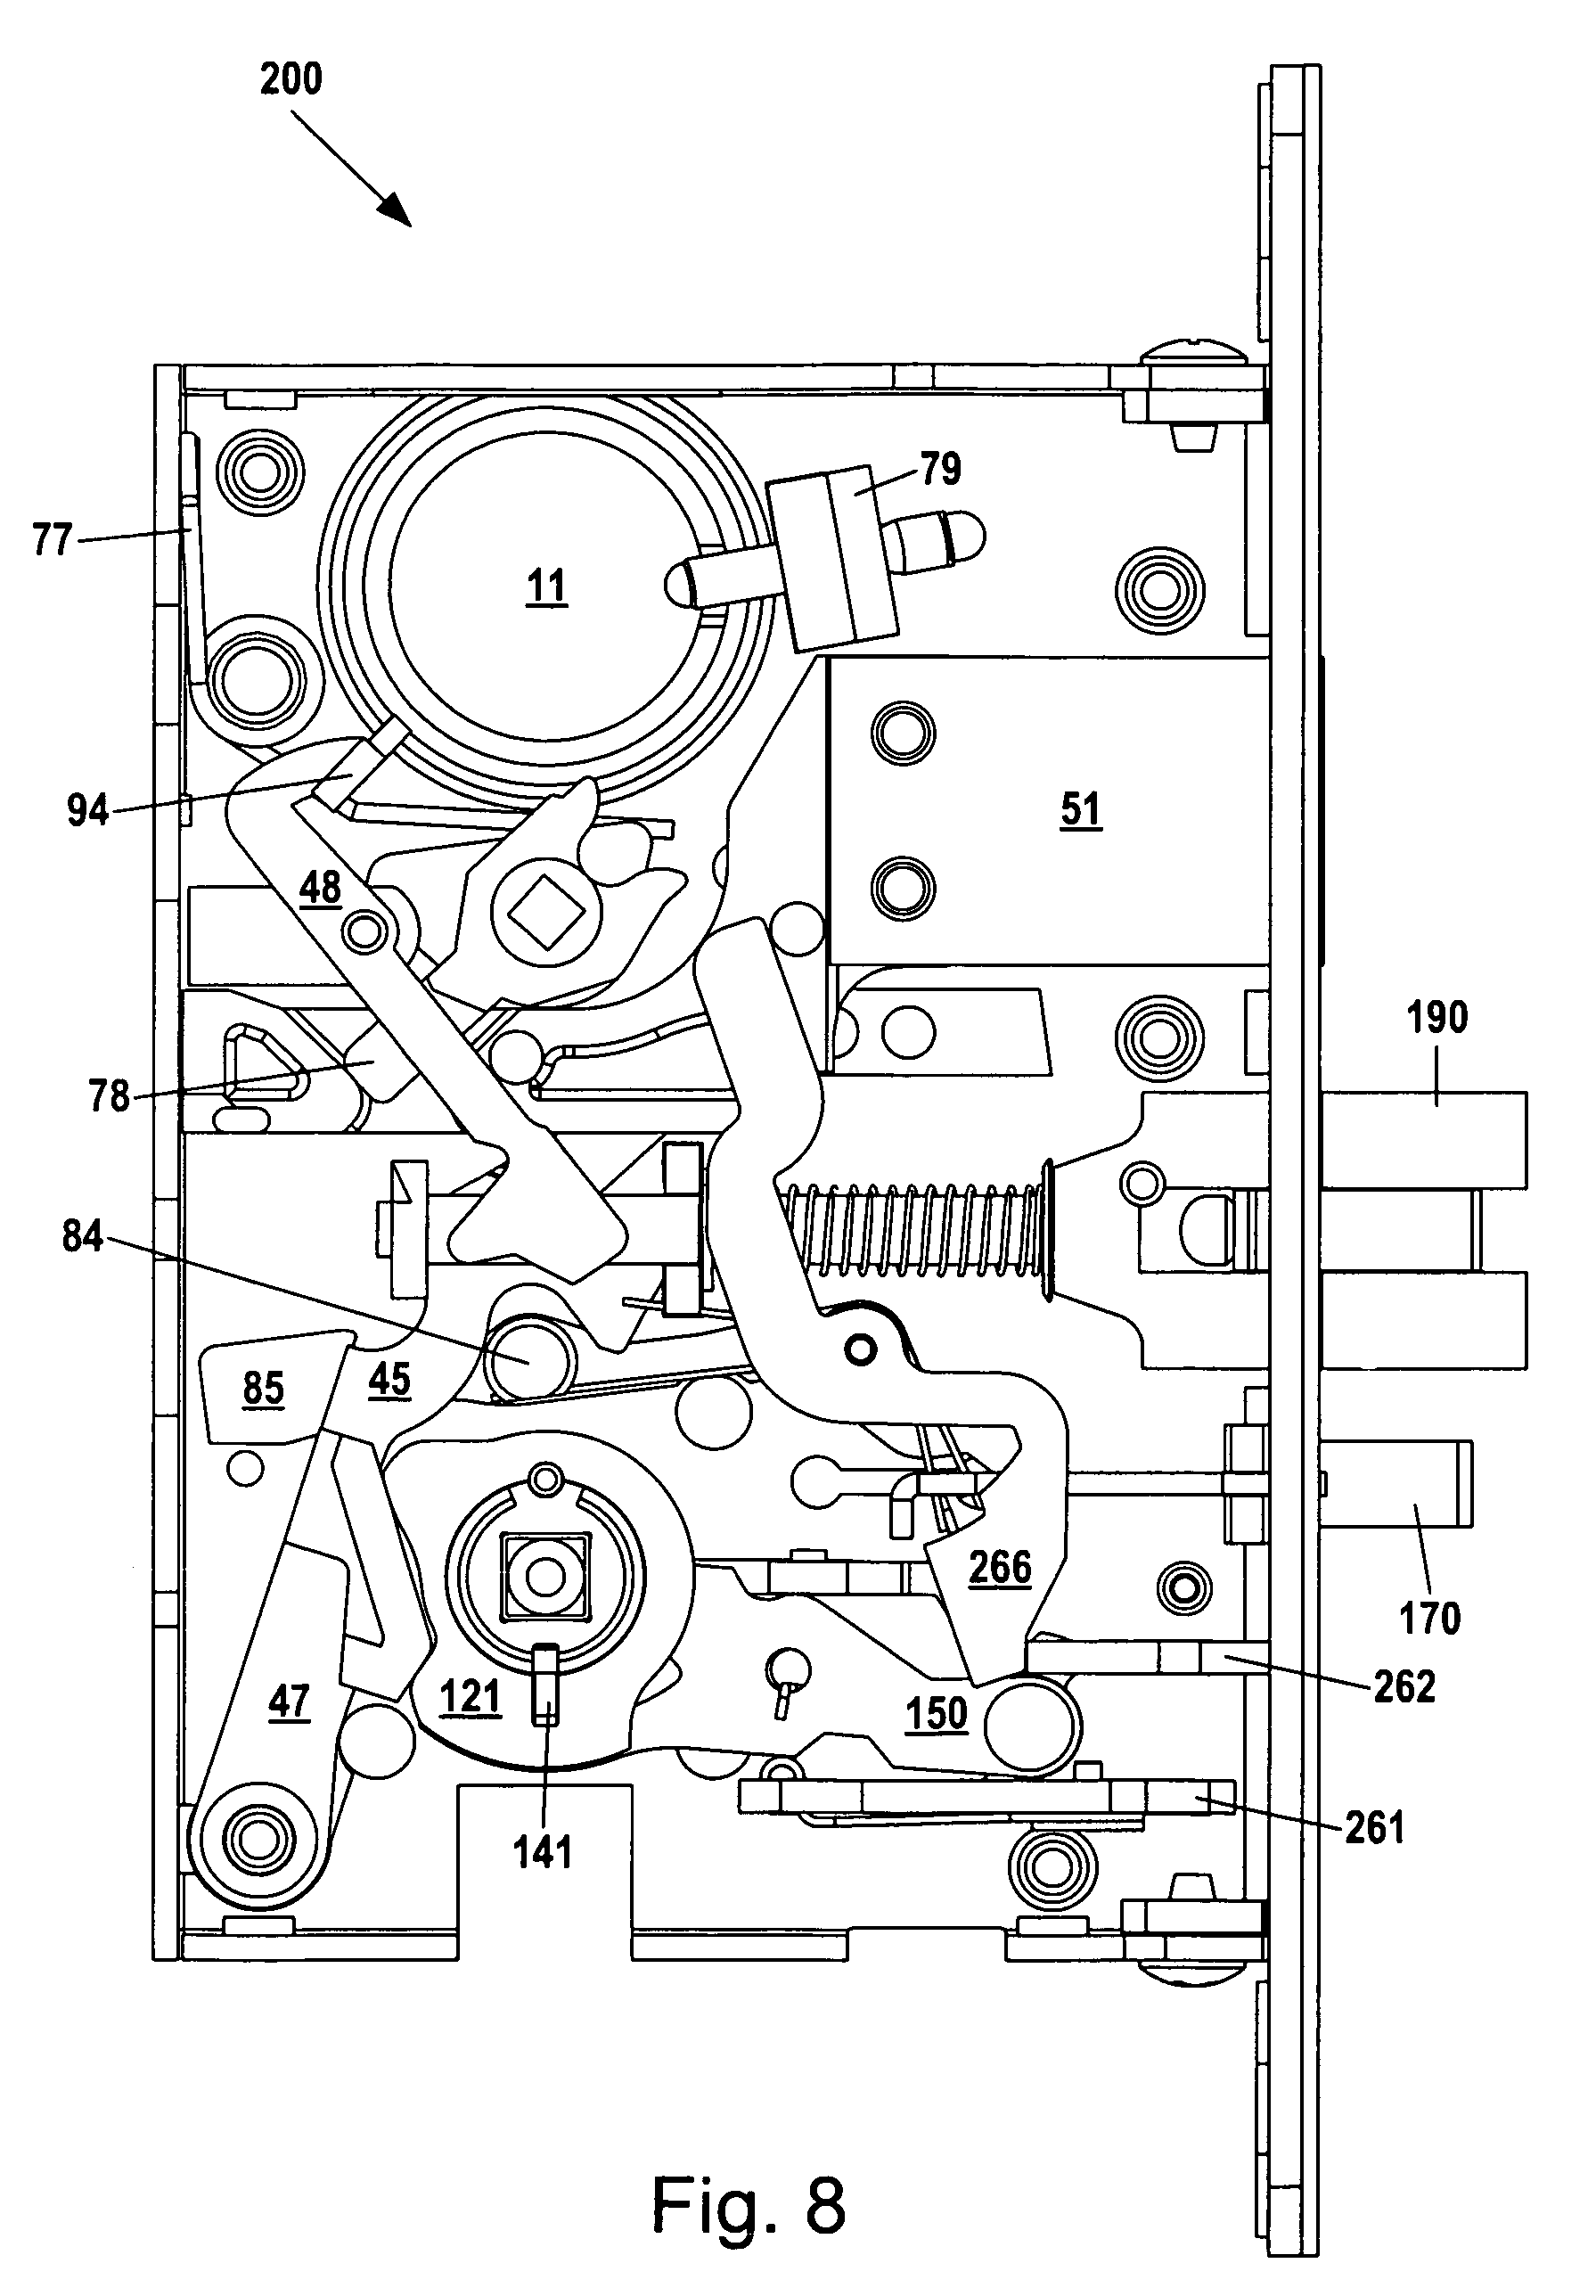 schlage lock parts diagram